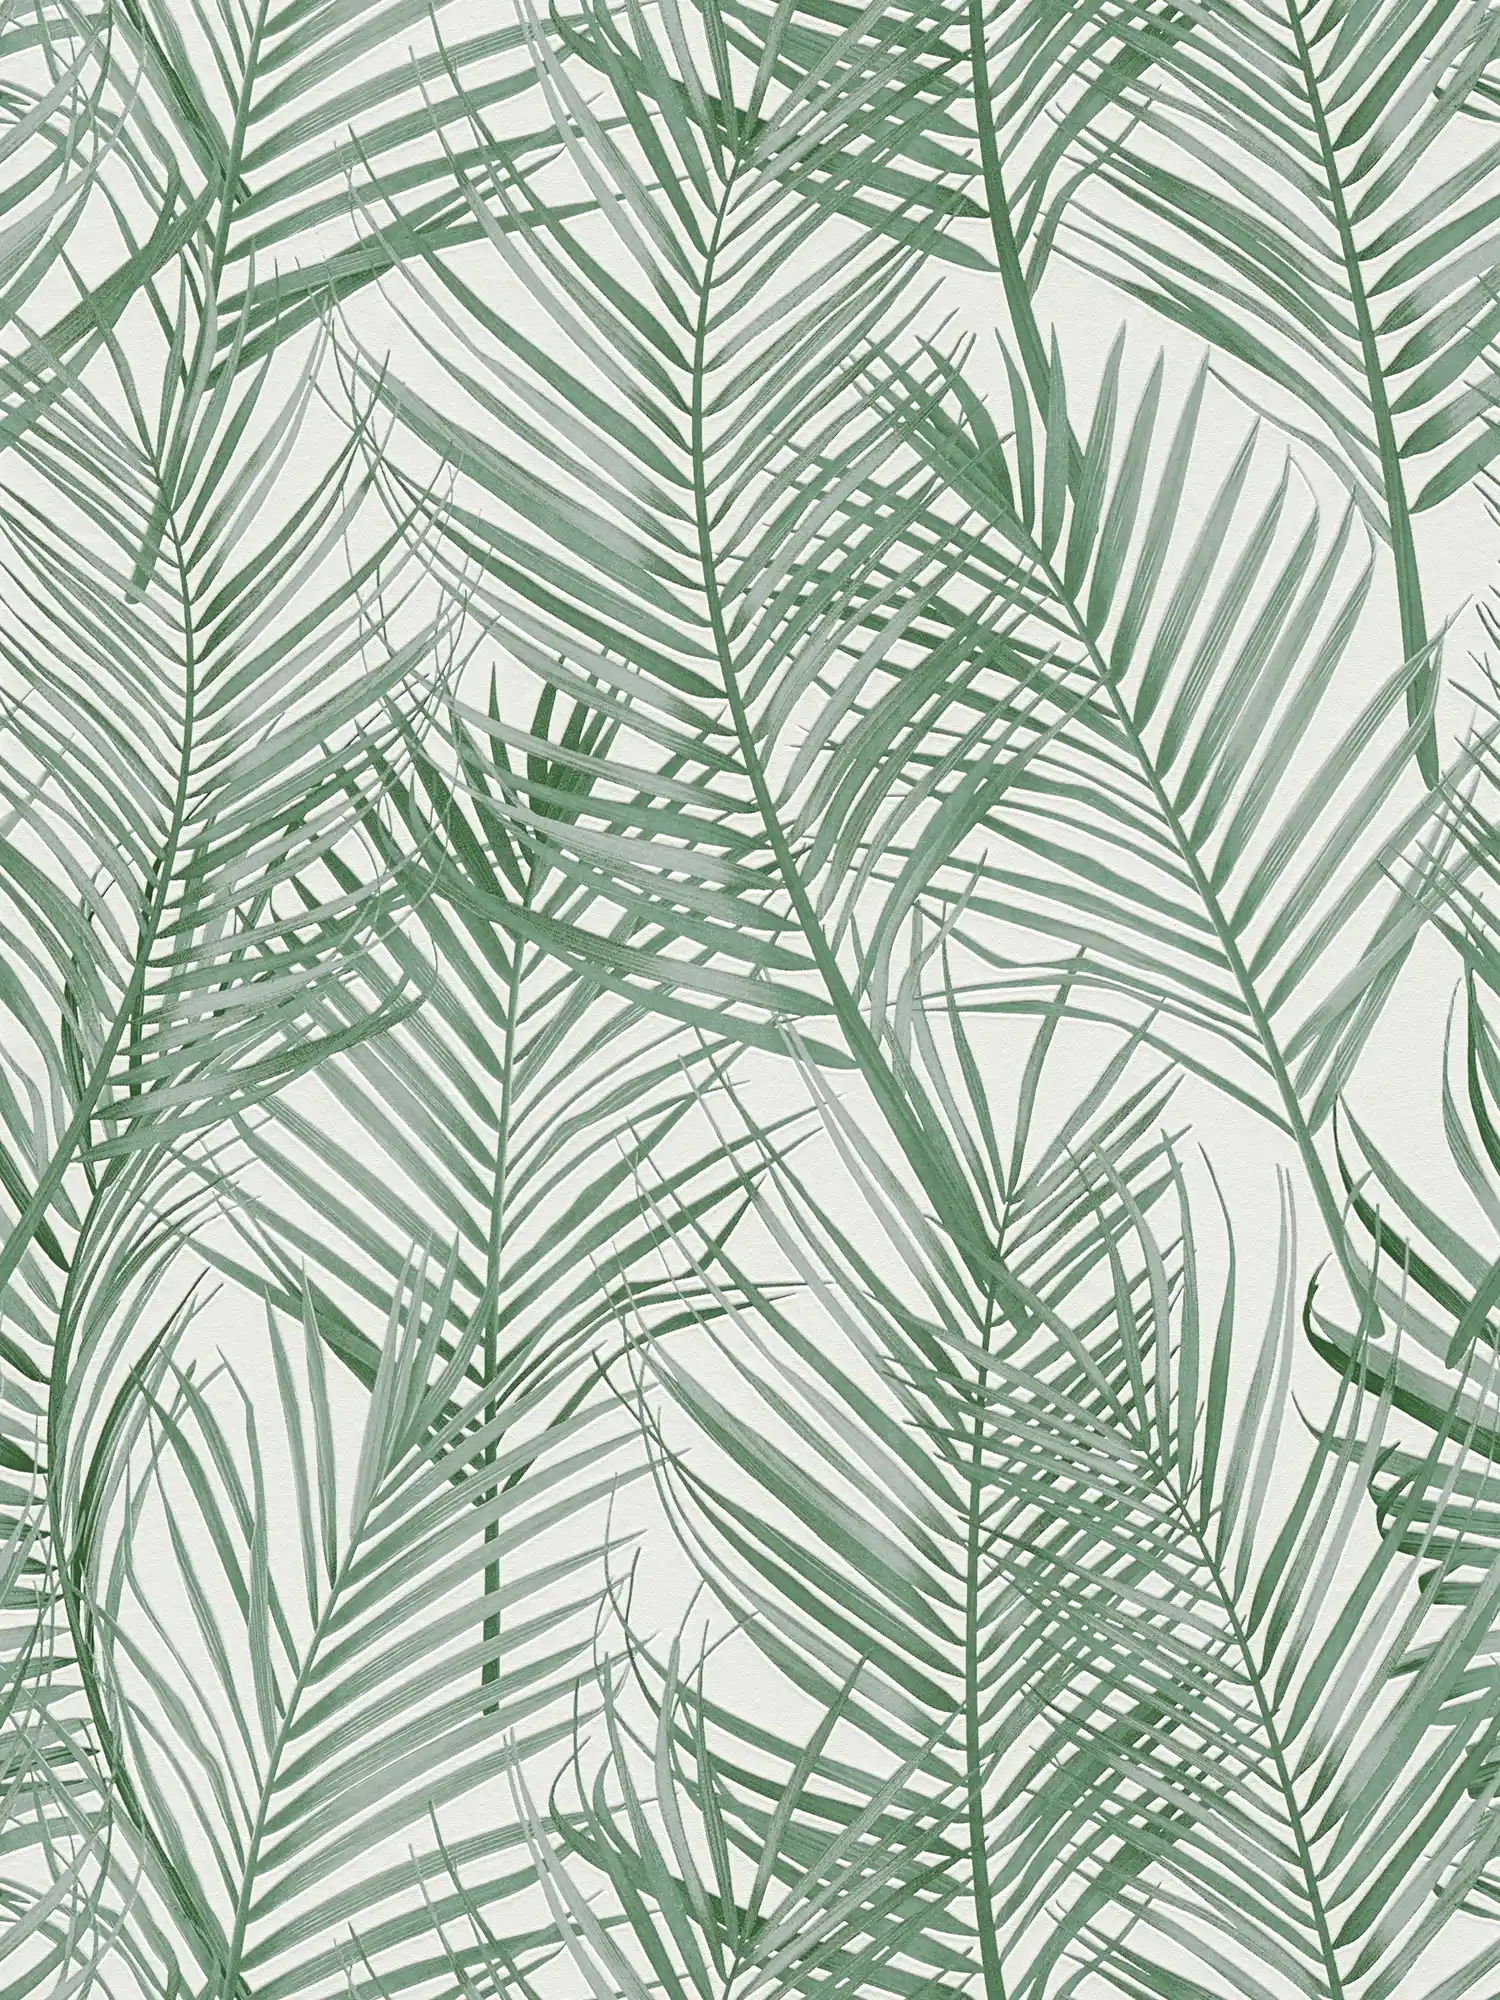 Vliesbehang met groot palmboompatroon - groen, wit
